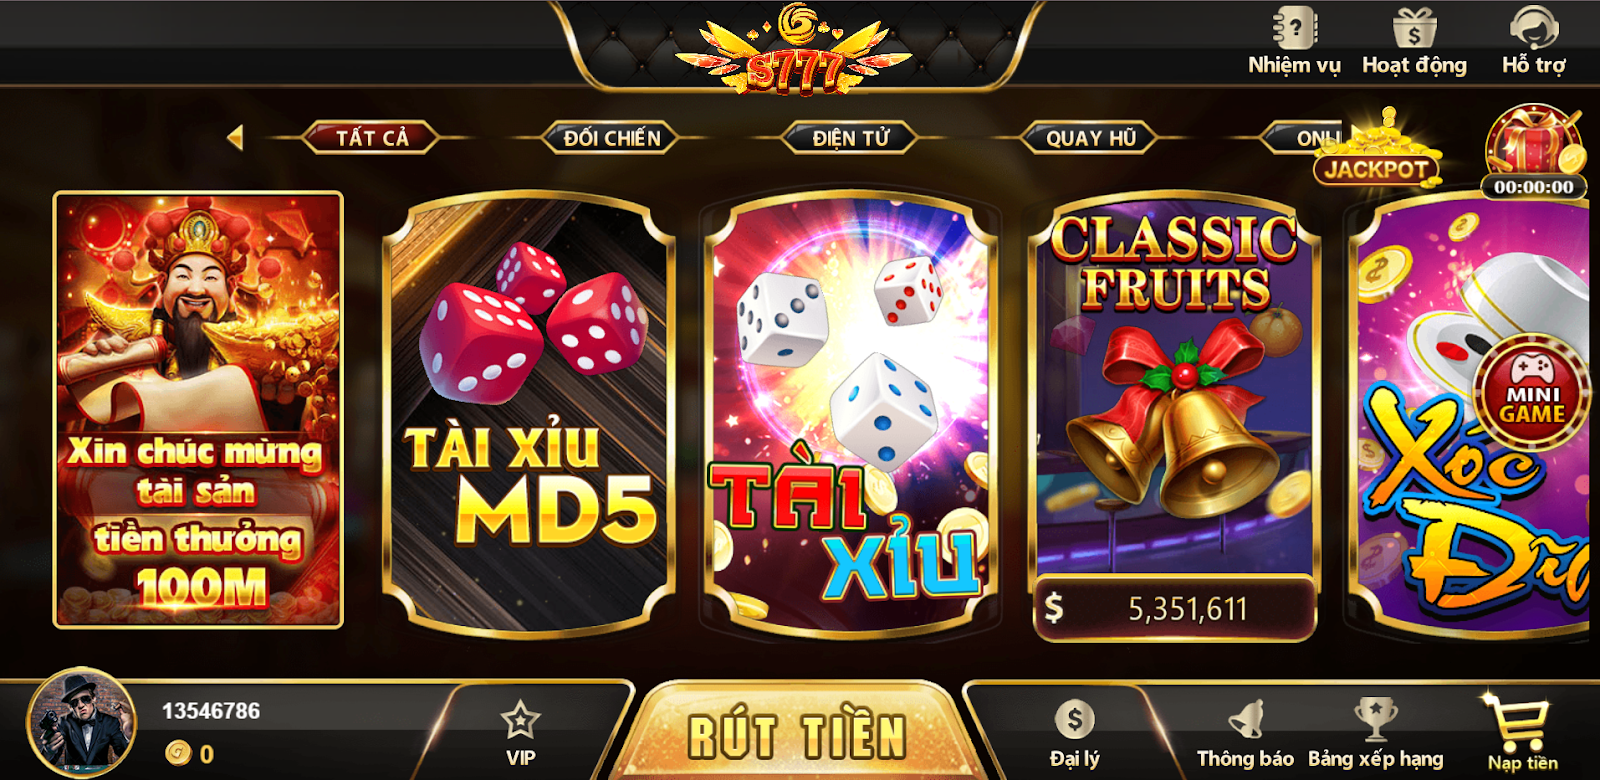 S777 Game Bài - Cổng game bài casino online rút tiền mặt uy tín